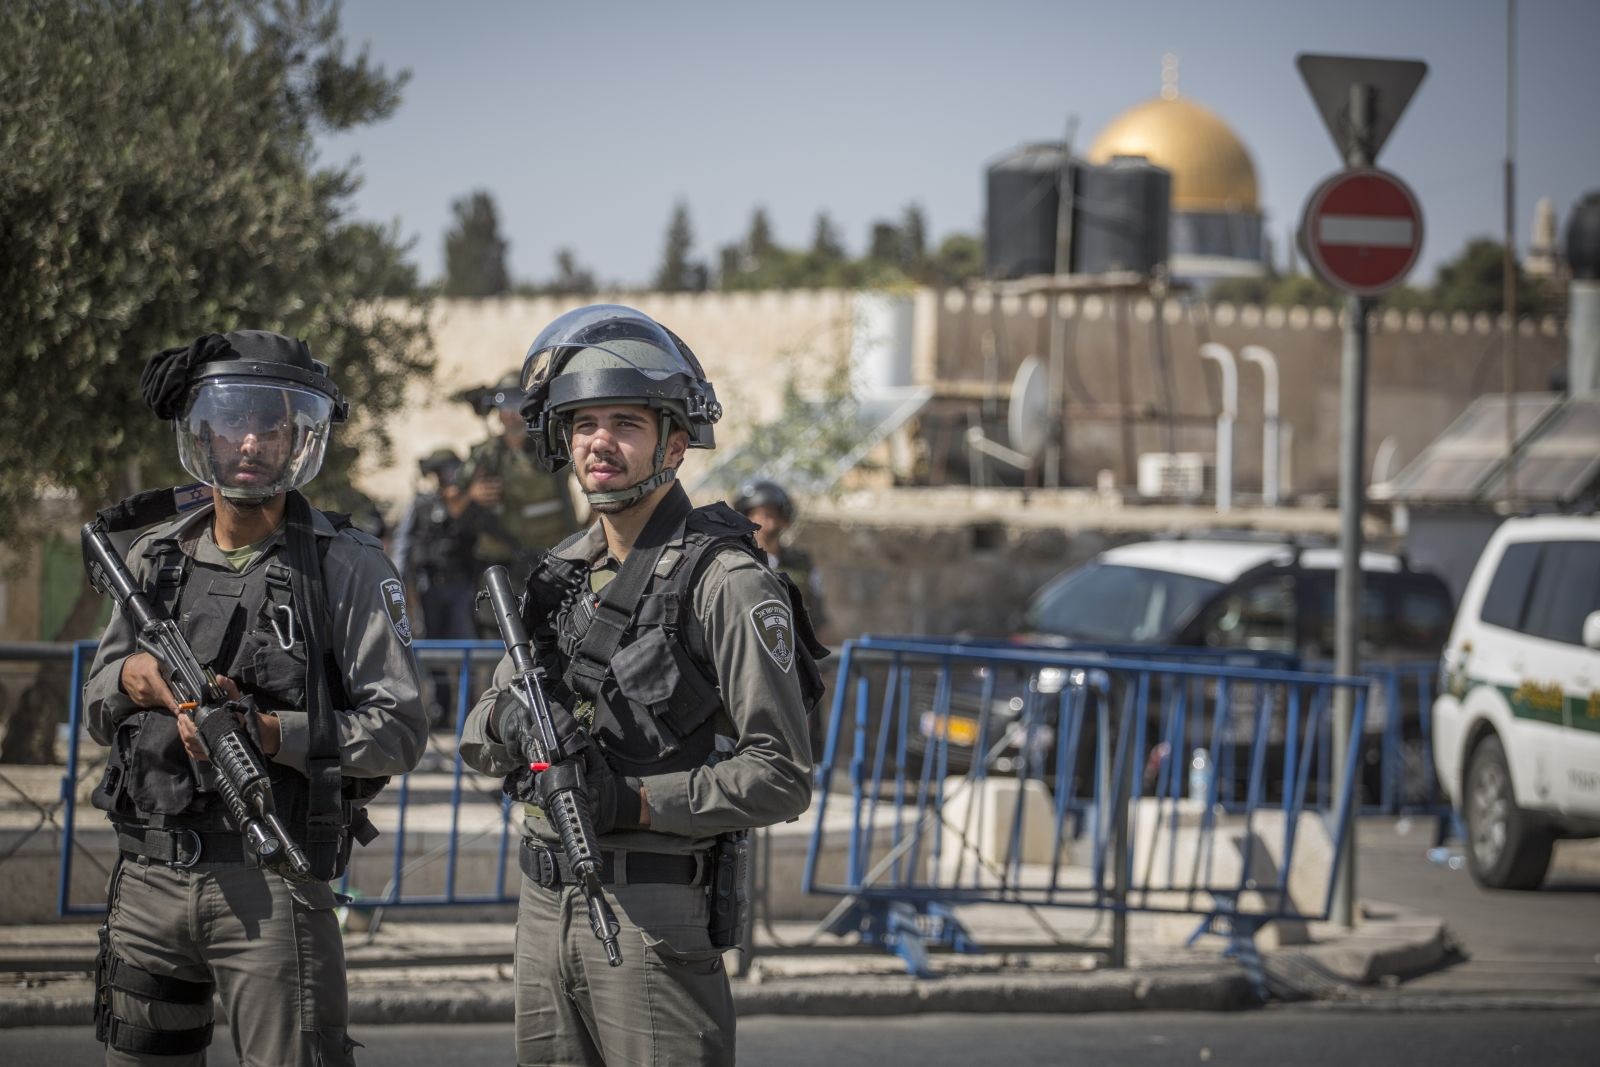 الاحتلال يحول القدس إلى ثكنة عسكرية بذريعة تأمين "مسيرة الأعلام" الاستفزازية